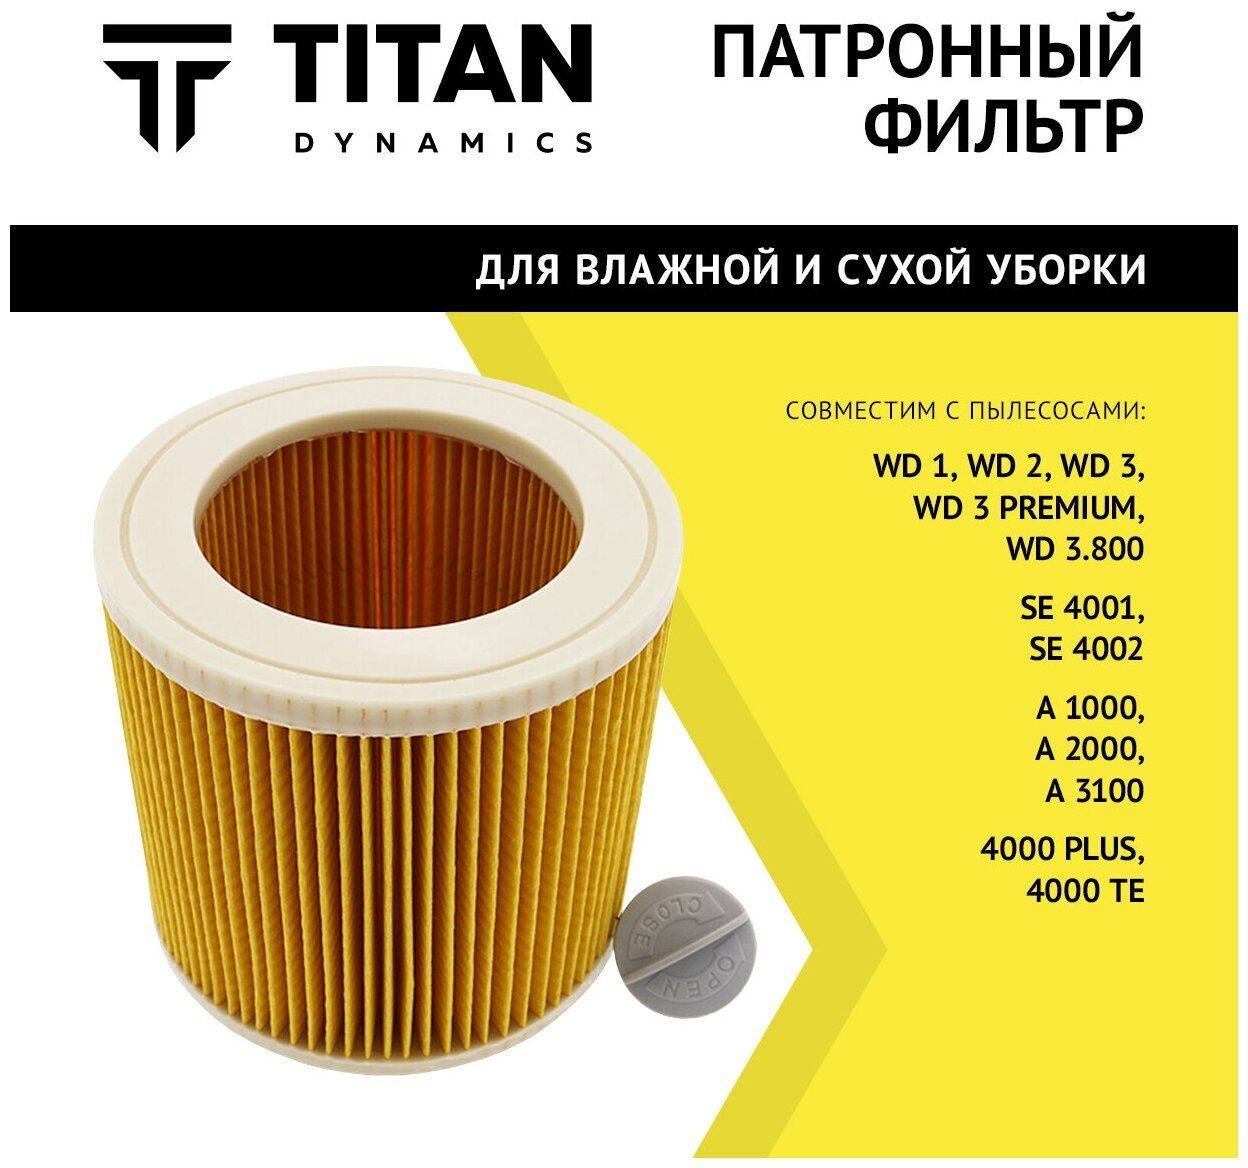 Фильтр для пылесоса Патронный фильтр TITAN для пылесосов KARCHER WD1, WD2,WD3 PREMIUM